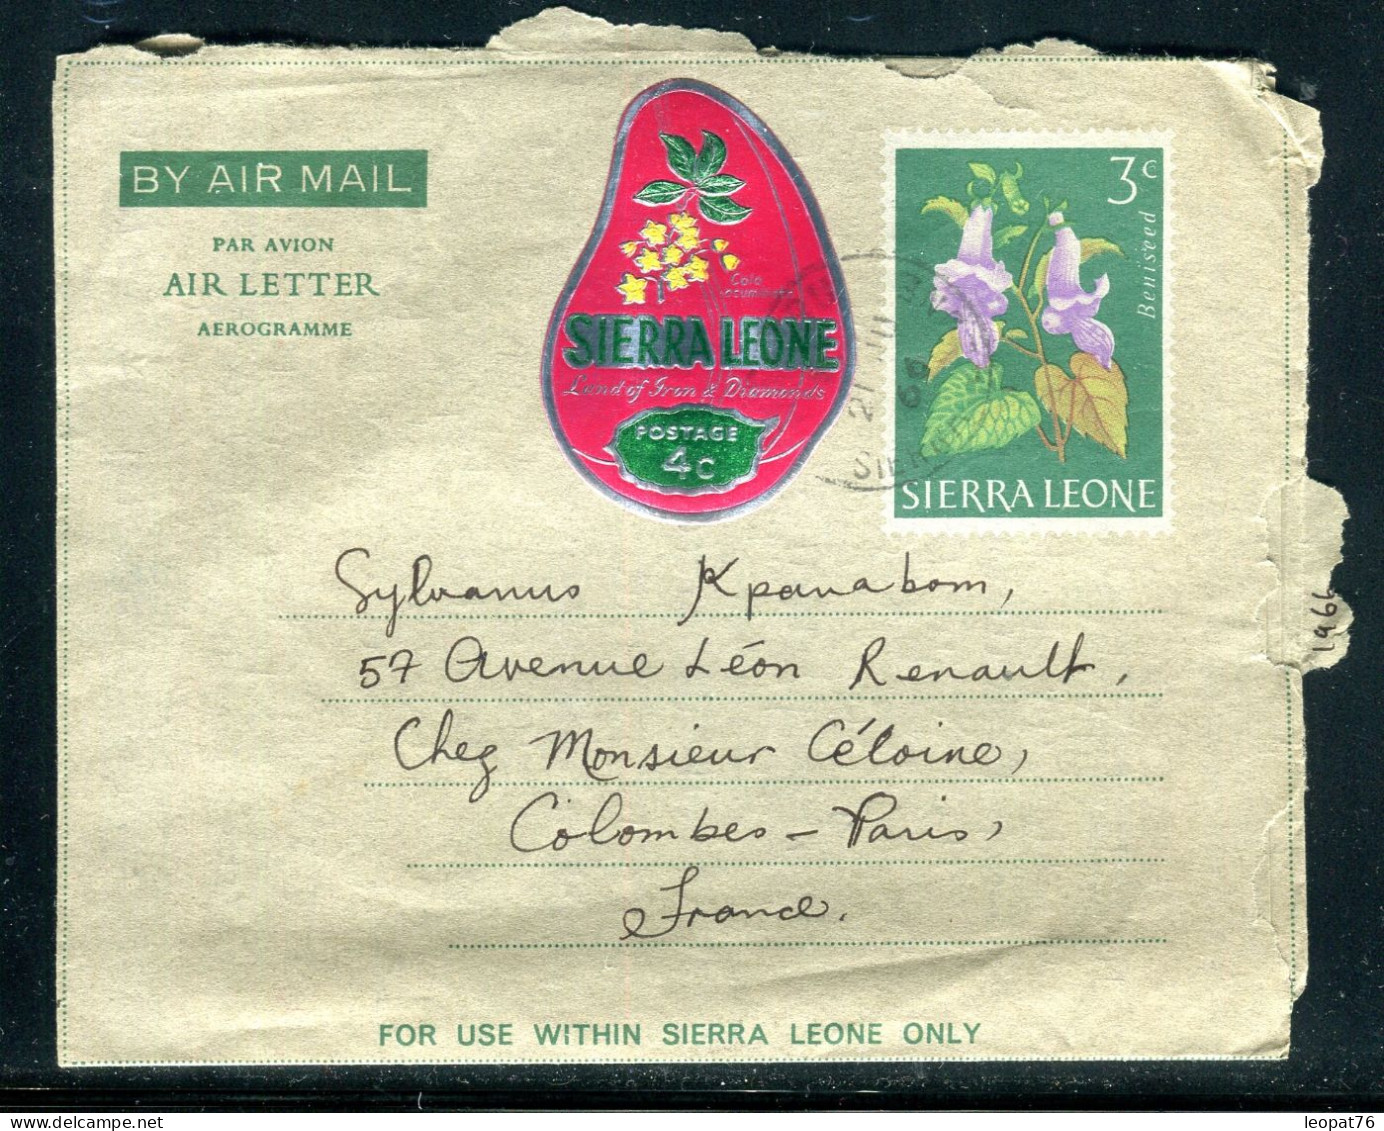 Sierra Leone - Aérogramme + Complément De Mattru Jong Pour La France En 1966 - Référence M 16 - Sierra Leone (1961-...)